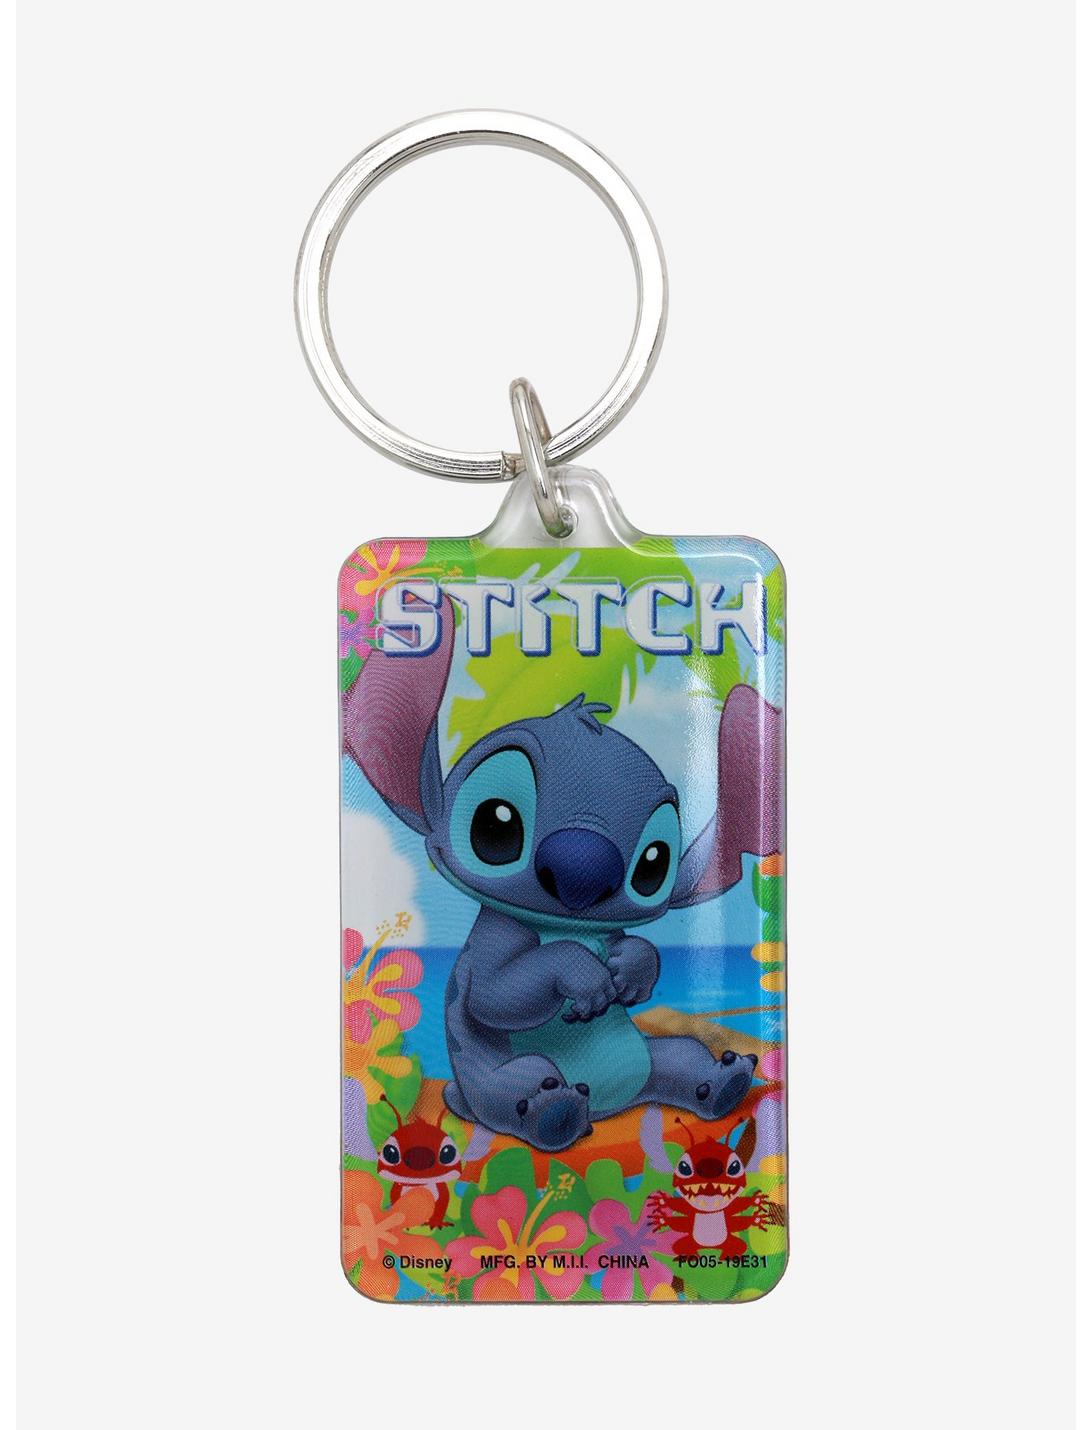 Disney Lilo & Stitch Flowers Lucite Key Chain, , hi-res